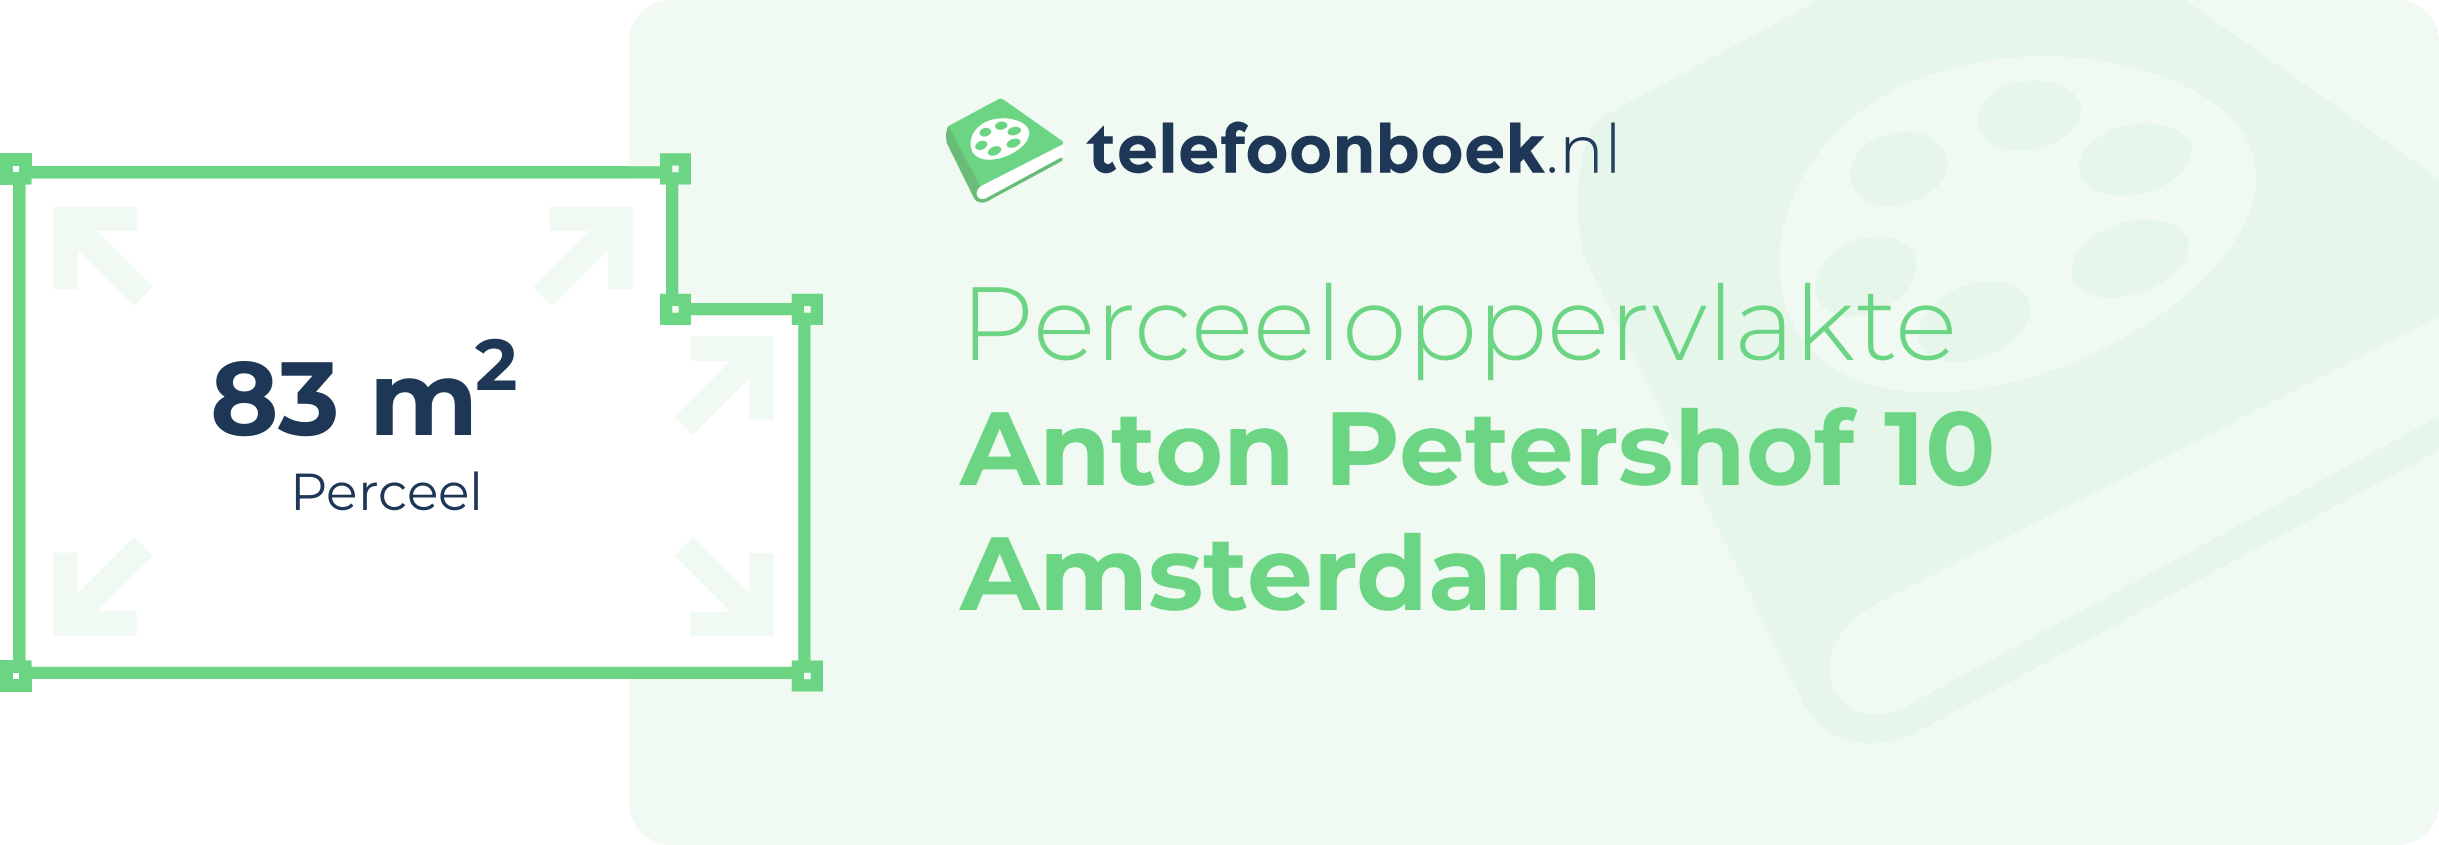 Perceeloppervlakte Anton Petershof 10 Amsterdam